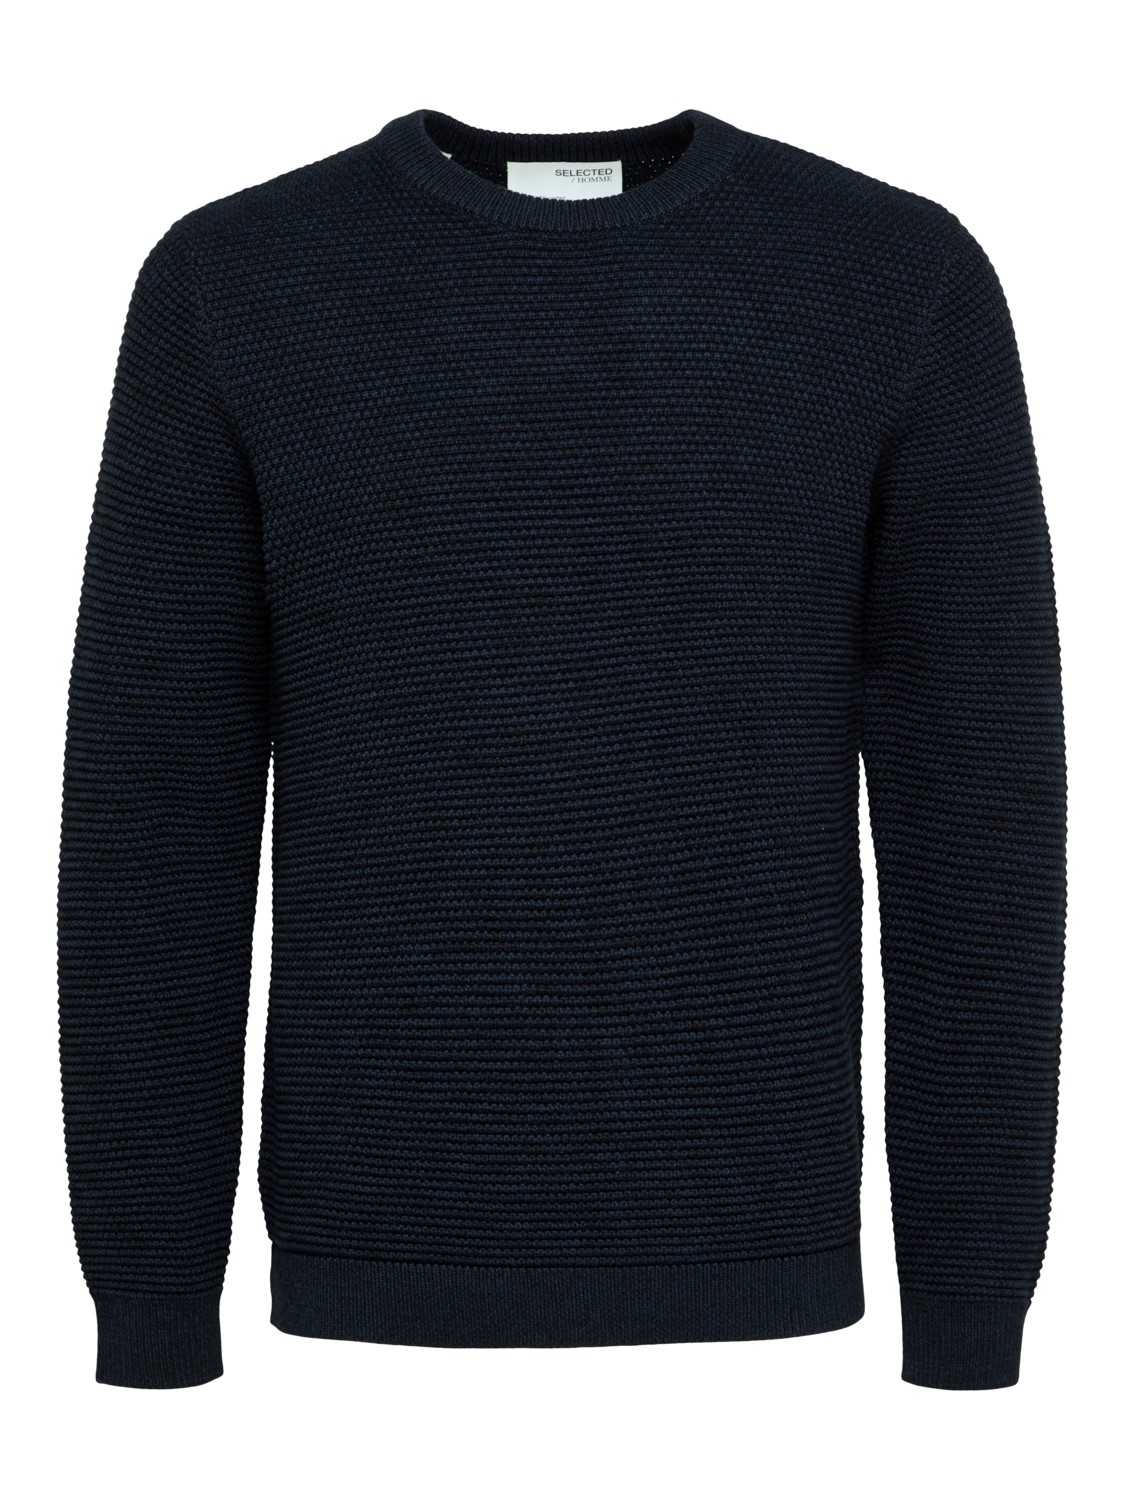 Пуловер SELECTED HOMME SLHVINCE, черный пуловер selected homme slhvince коричневый